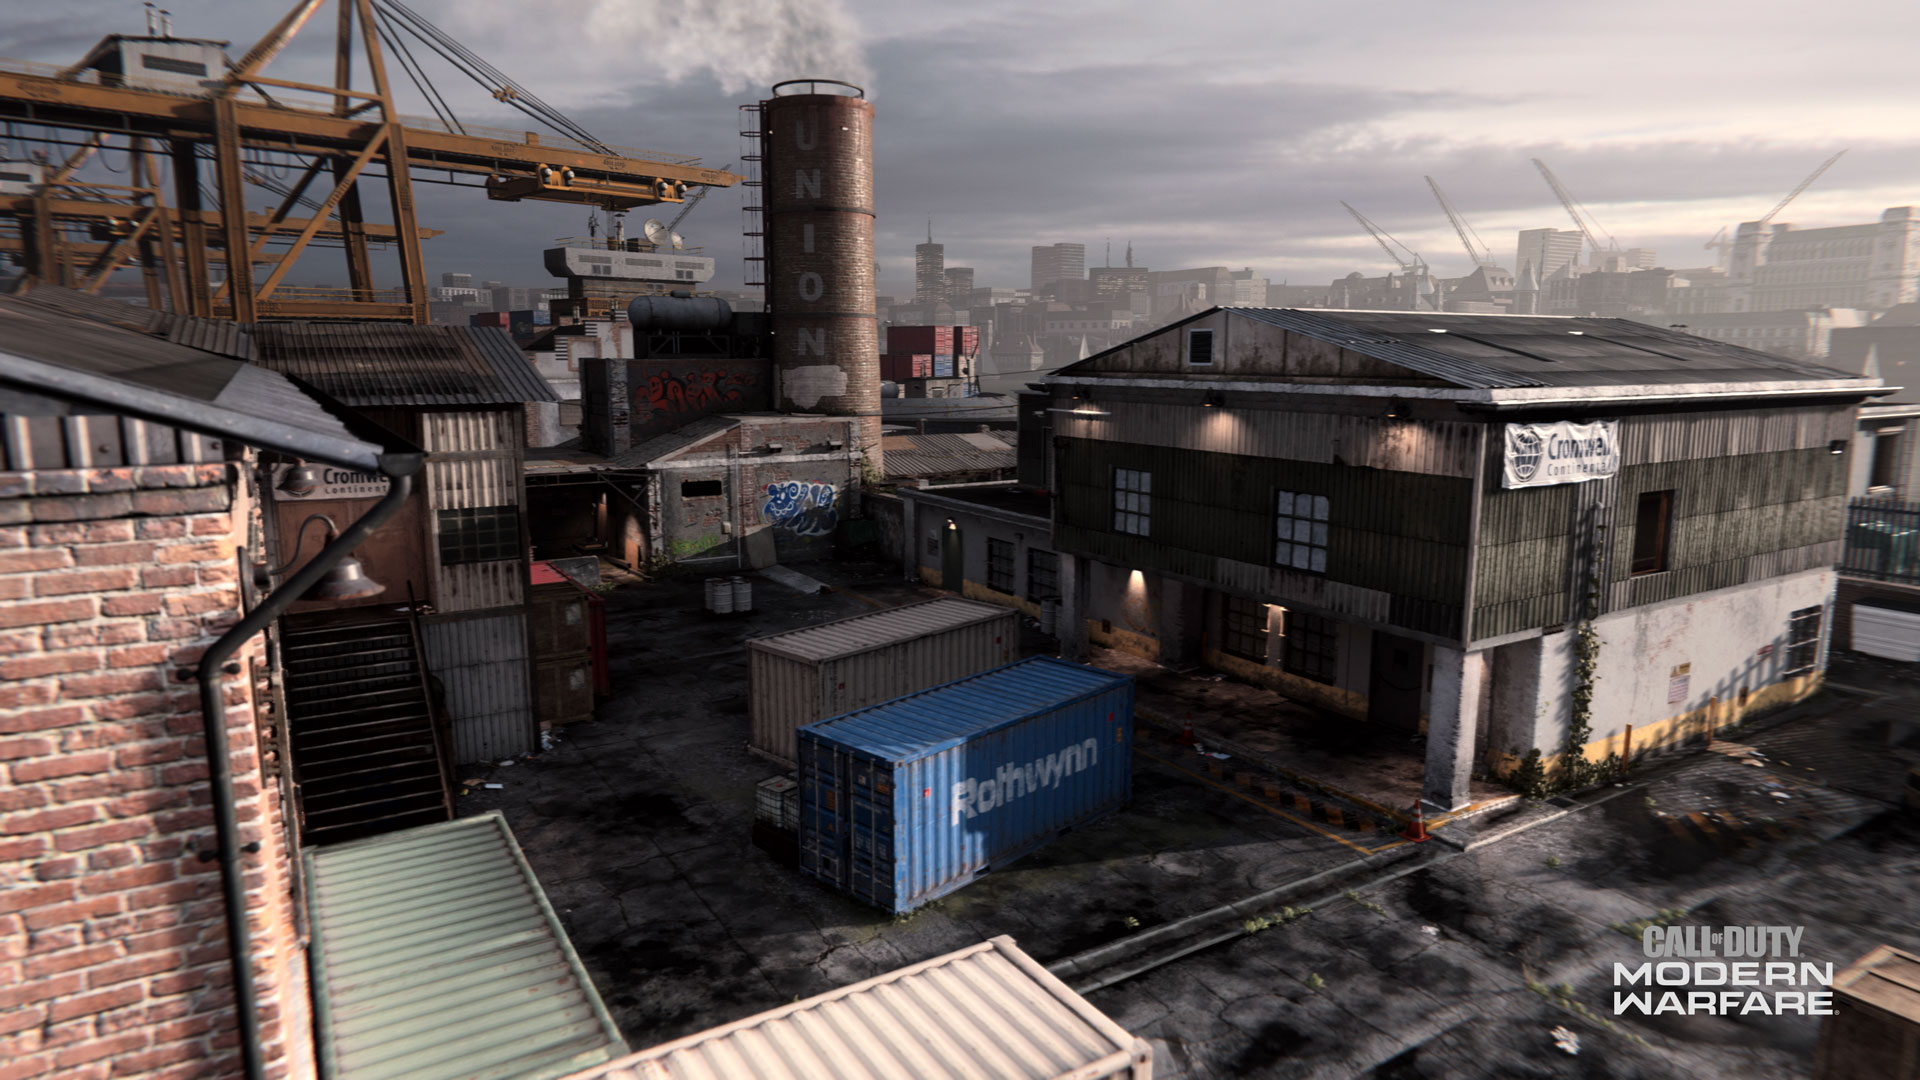 BETA MAPS HACKNEYYARD - Das erwartet euch in der Call of Duty Modern Warfare Beta